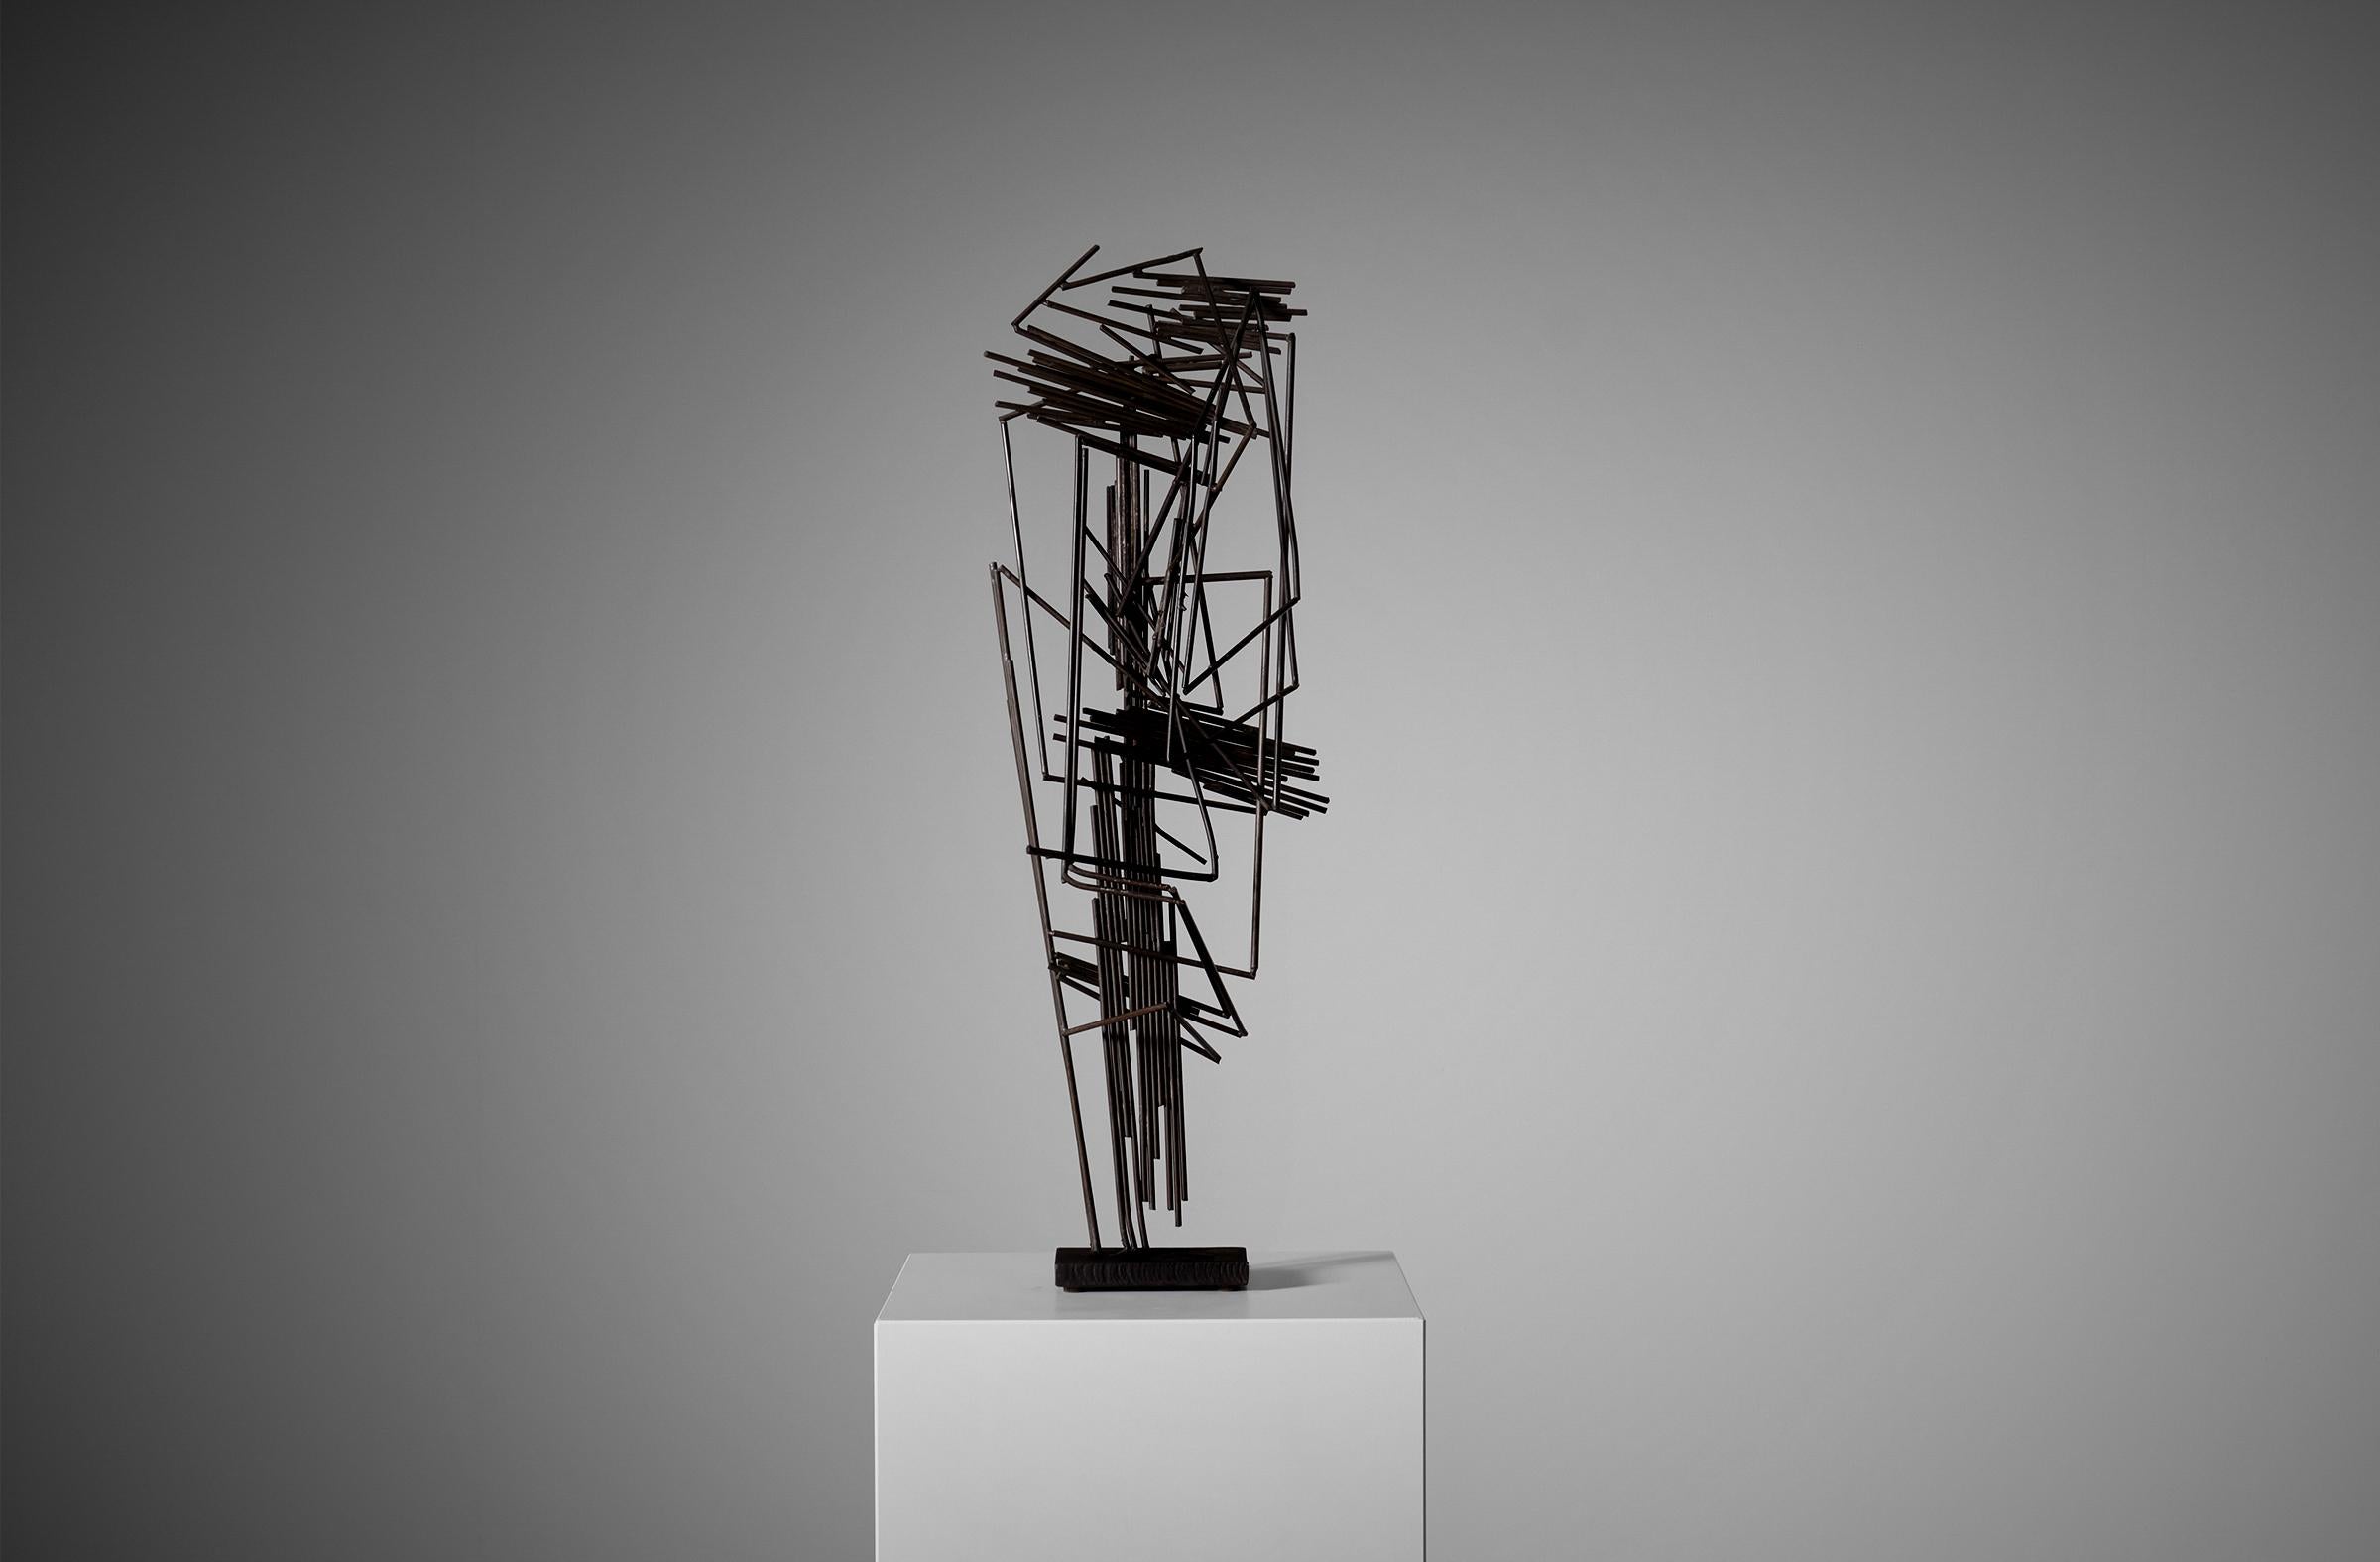 Sculpture abstraite d'André Bloc (1896 - 1966), France ca. 1960. La sculpture est composée de bronze brasé et de tiges métalliques sur une base en métal brut découpé, fascinante sous tous les angles. Provenance : Villa Bloc, Meudon France. Un